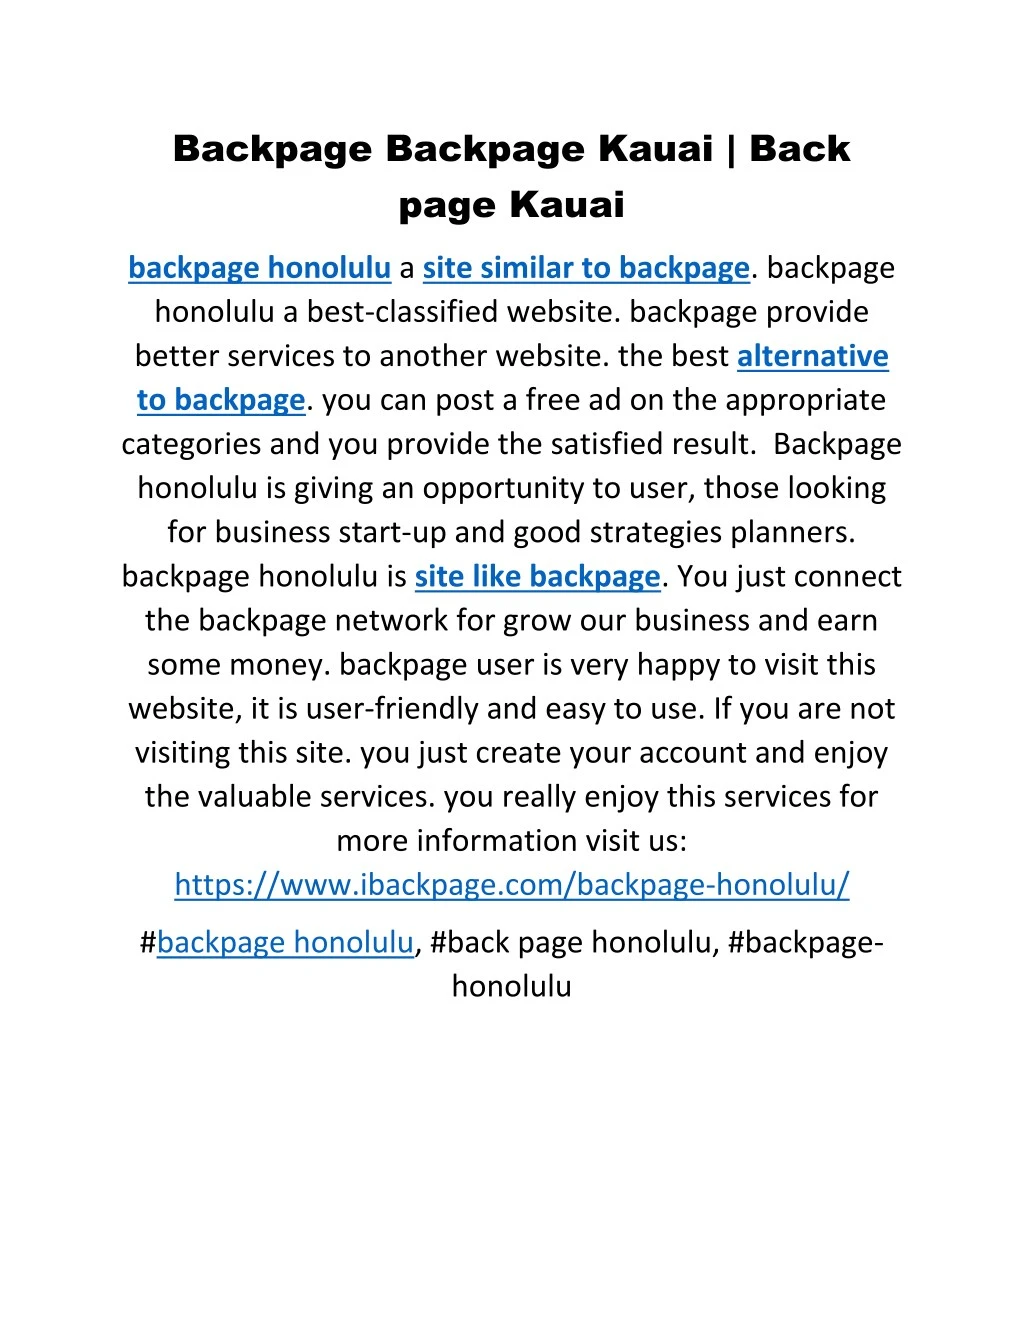 backpage backpage kauai back page kauai